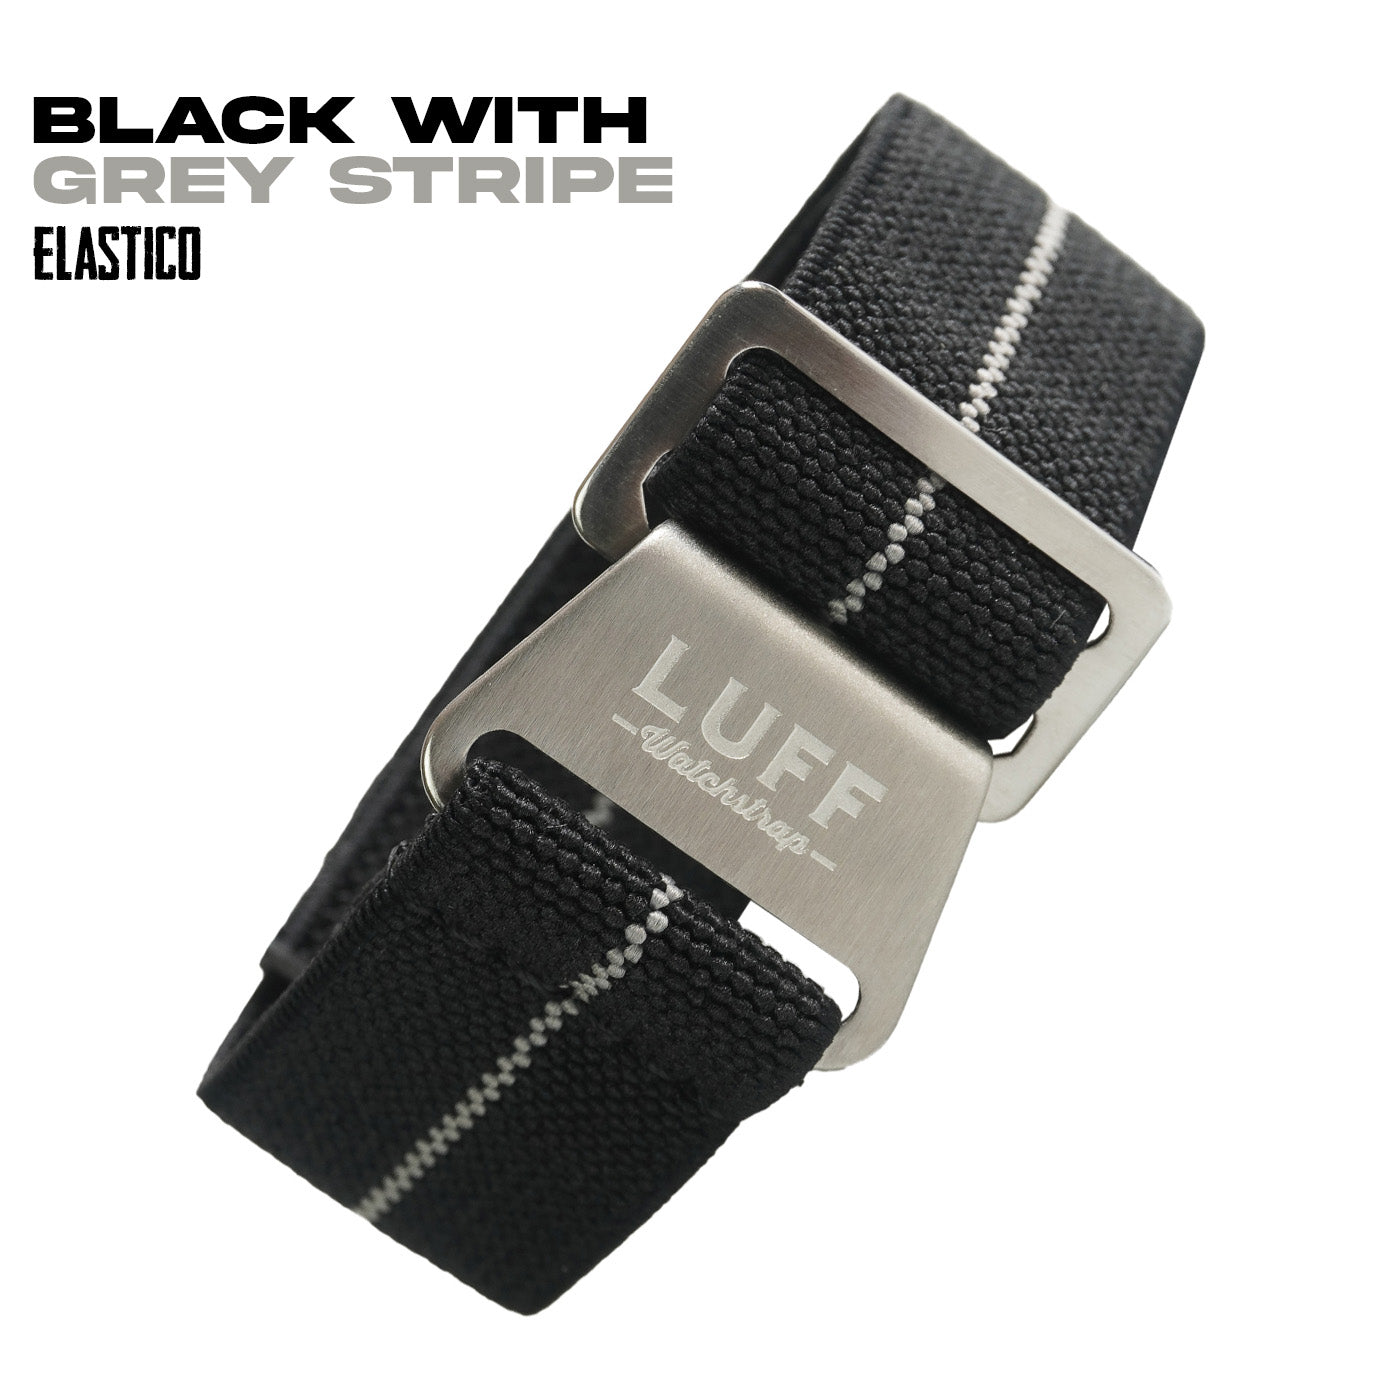 Black with Grey Stripe (6900561182807)